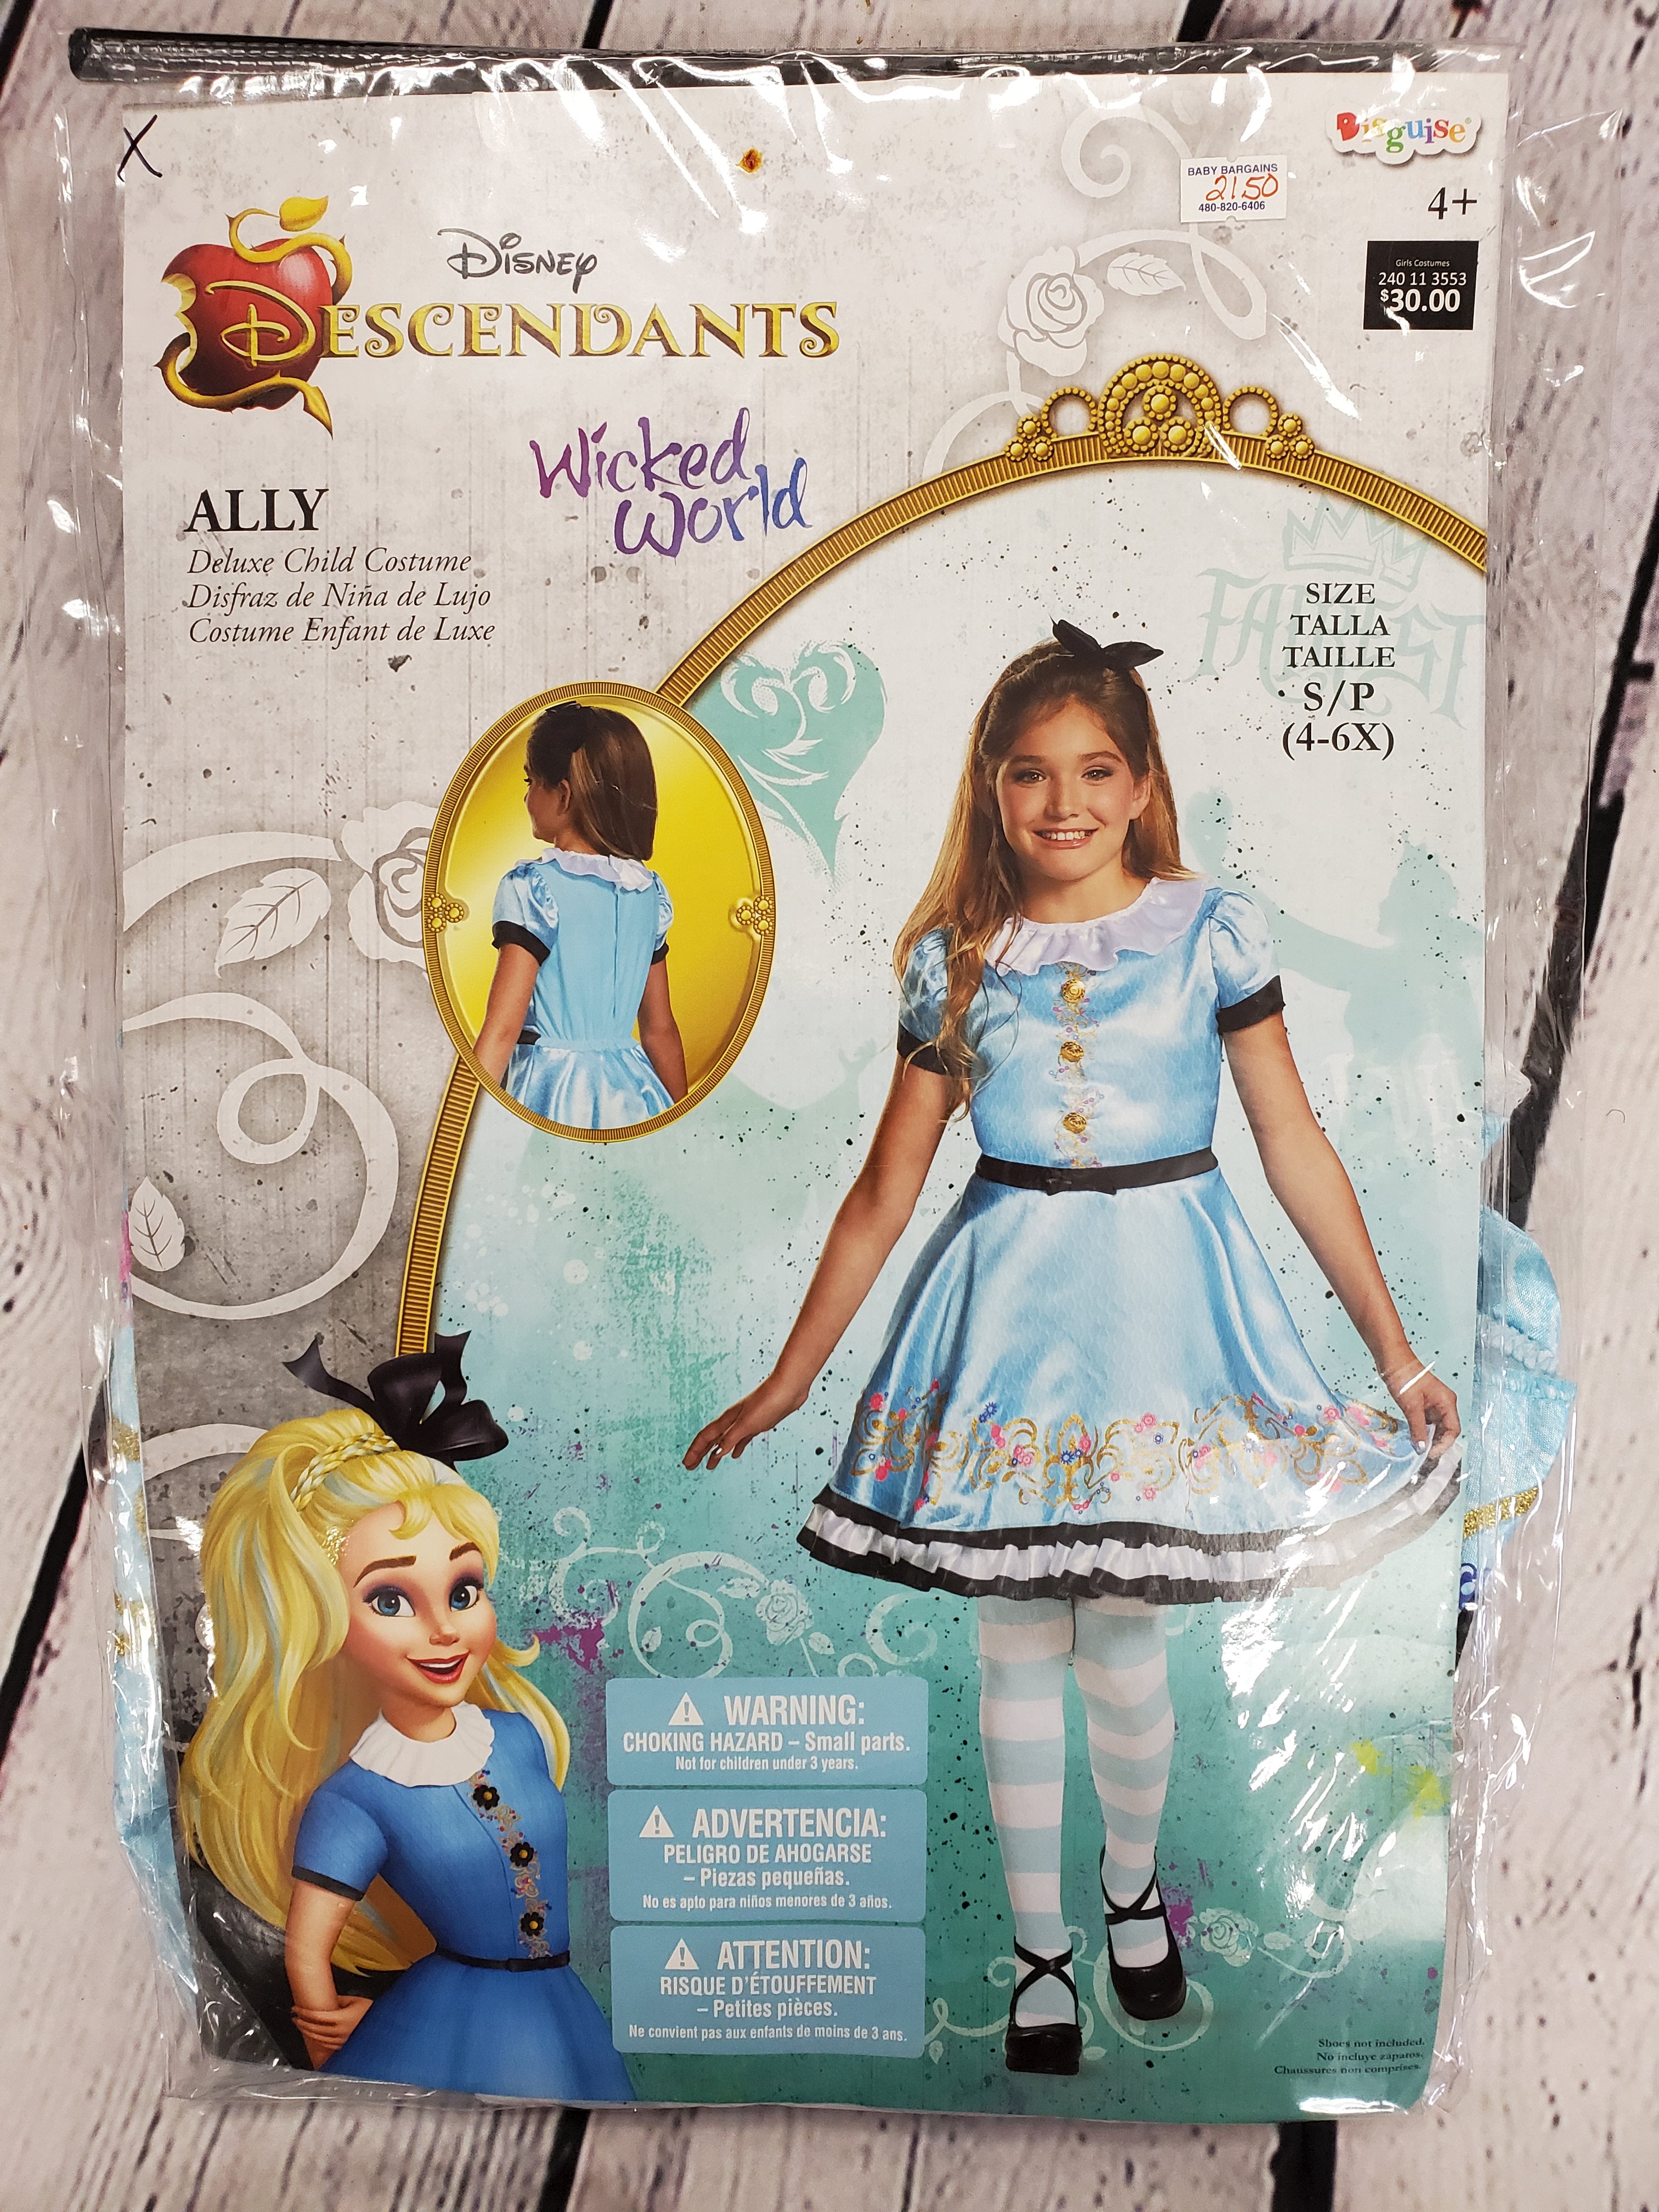 Disney Descendants Ally girls costume 4+